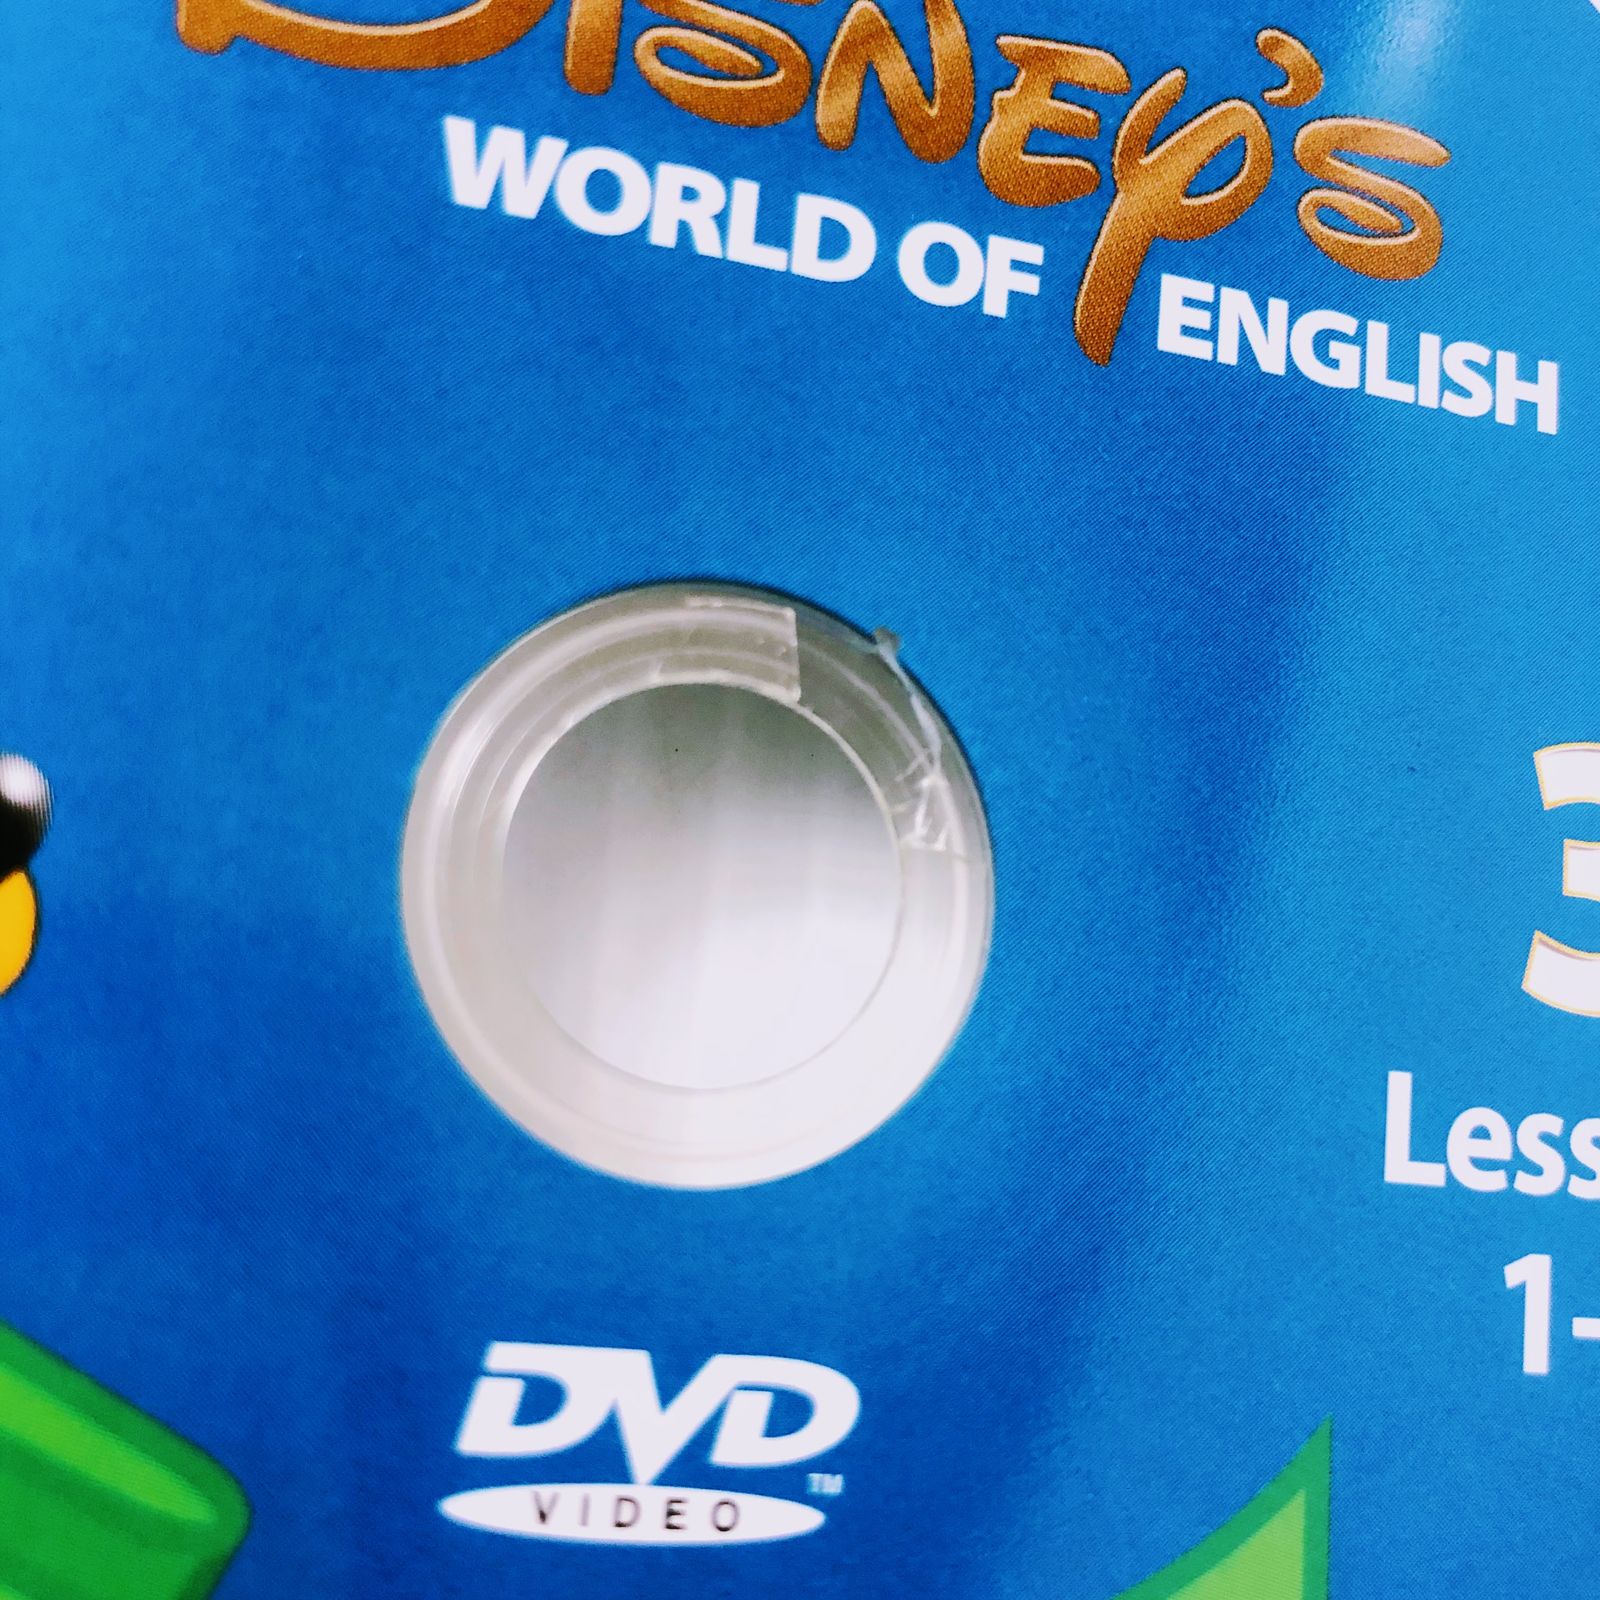 ディズニー英語システム メインプログラム DVD 旧子役 2006年 英語教材 ...